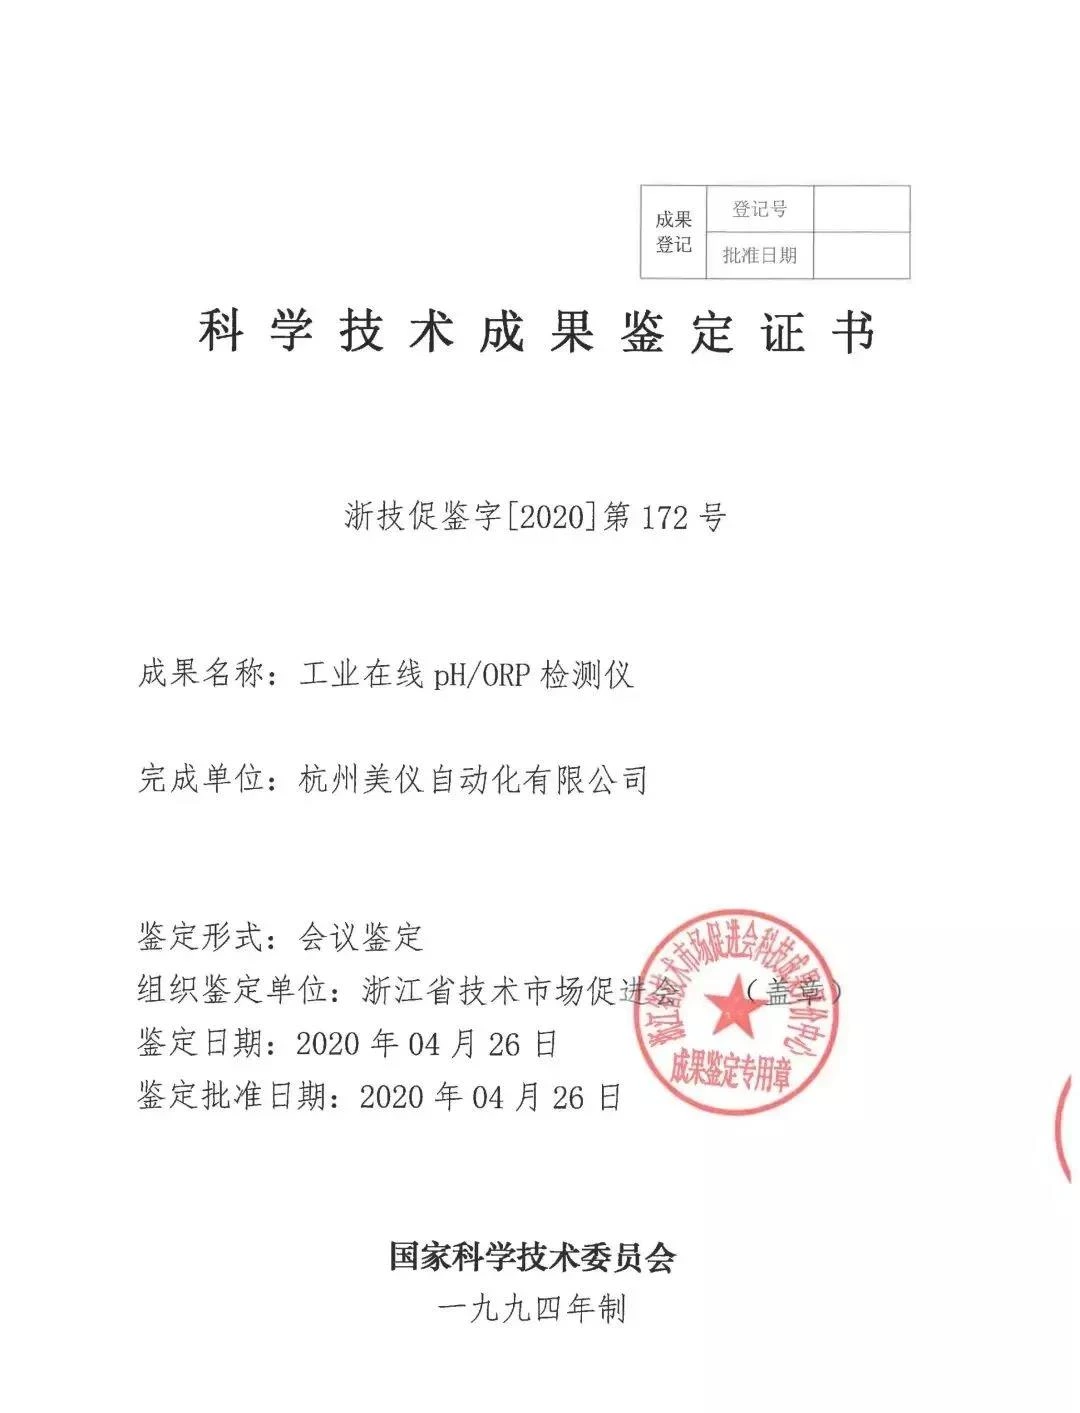 Заместитель генерального директора Supmea был принят на работу в качестве преподавателя для аспирантов по специальности «механика» в Чжэцзянском университете науки и технологий.